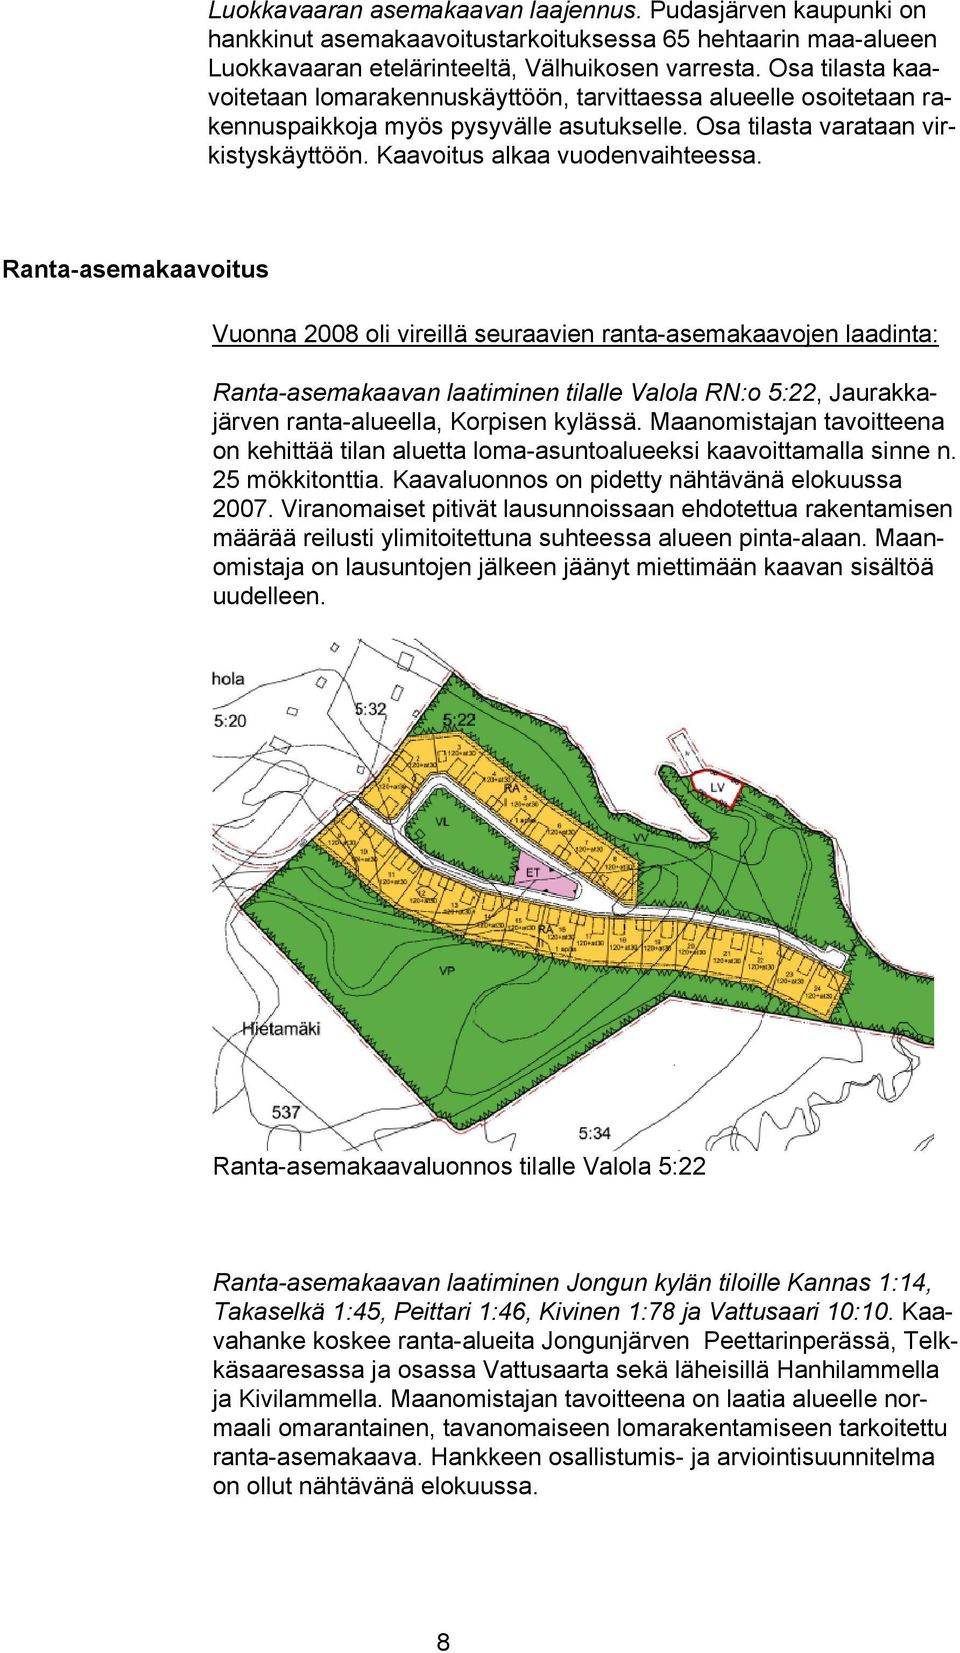 Ranta-asemakaavoitus Vuonna 2008 oli vireillä seuraavien ranta-asemakaavojen laadinta: Ranta-asemakaavan laatiminen tilalle Valola RN:o 5:22, Jaurakkajärven ranta-alueella, Korpisen kylässä.